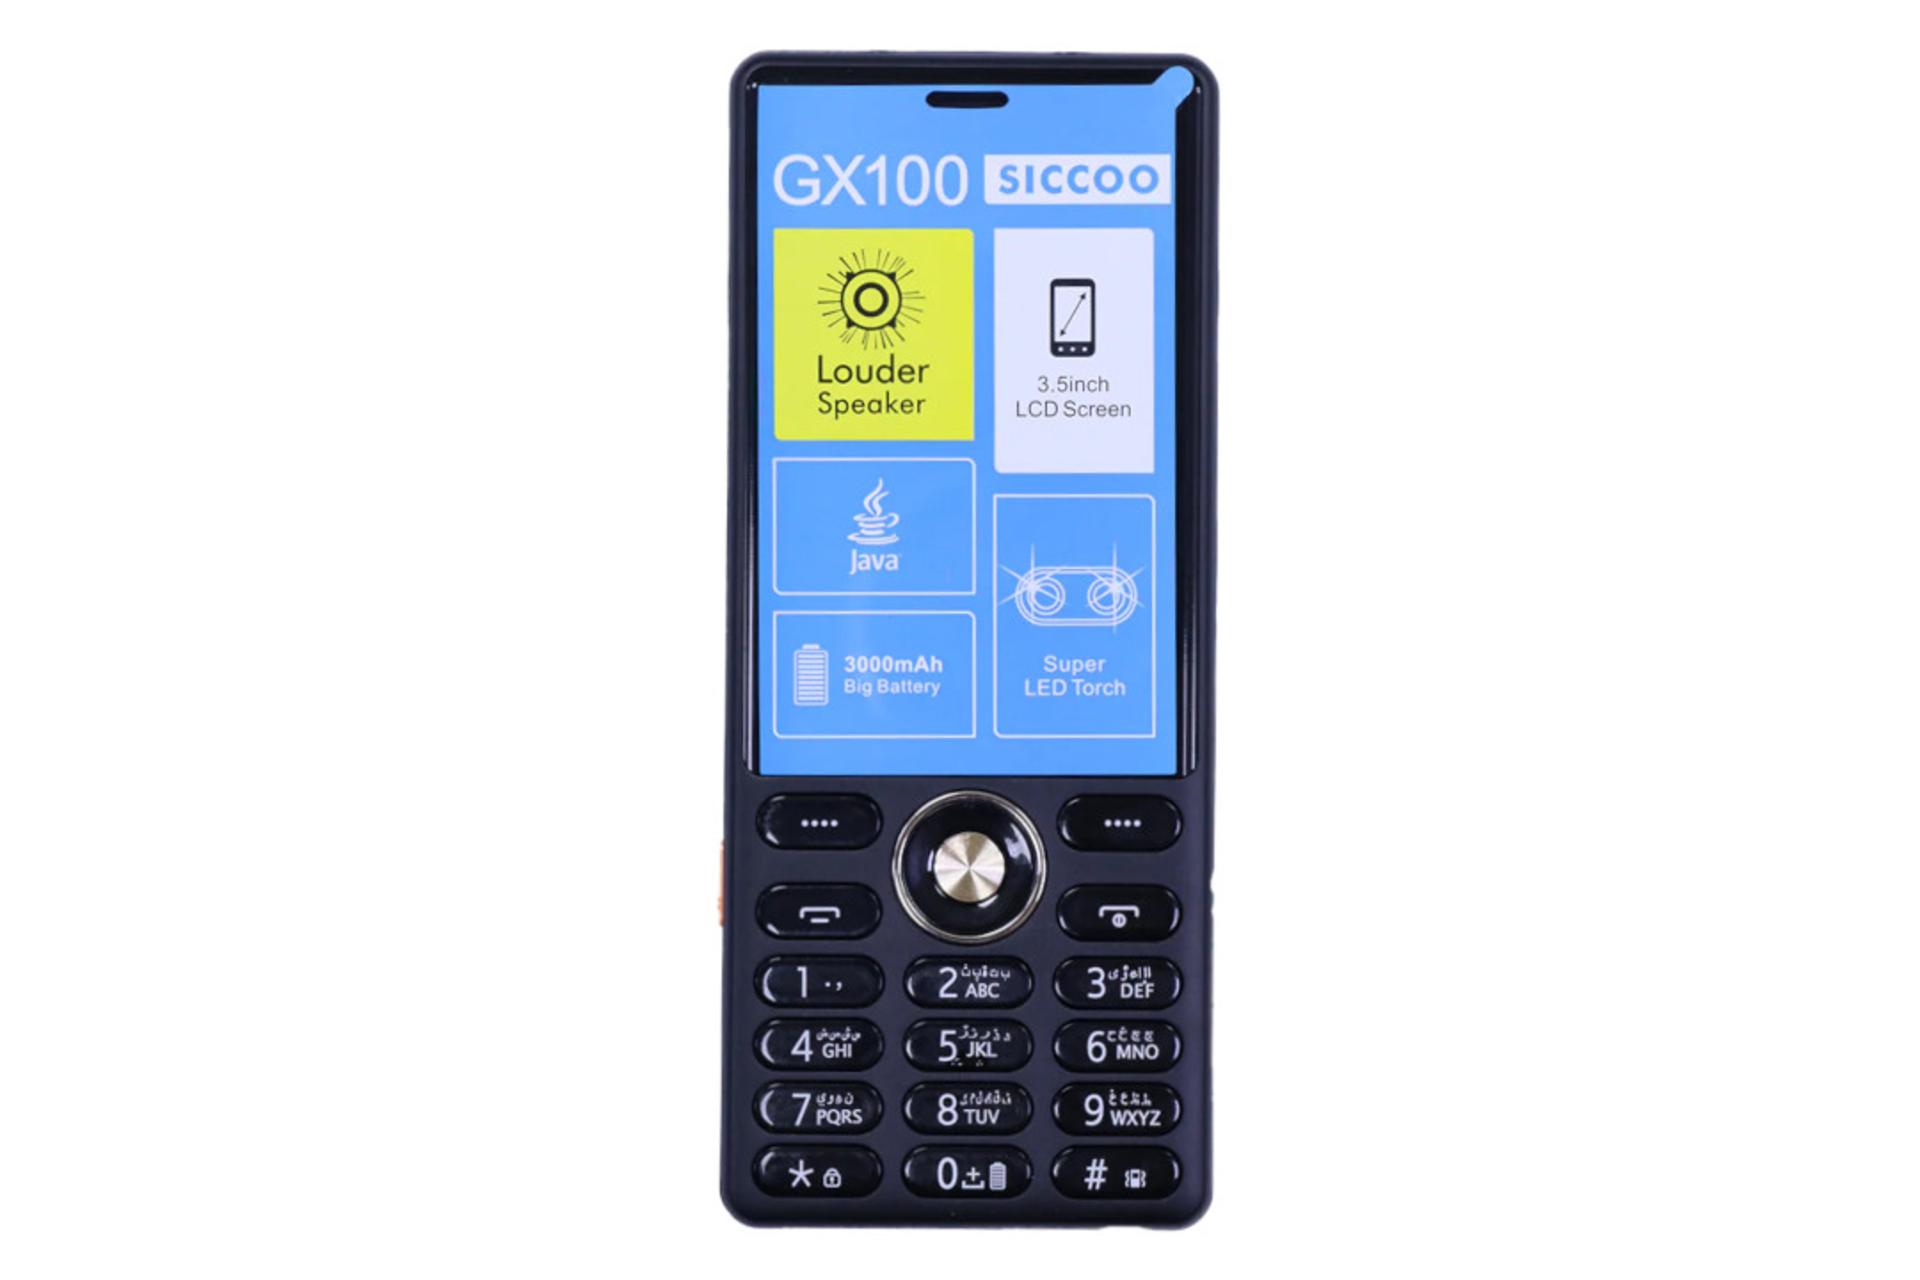 پنل جلو و صفحه کلید گوشی موبایل سیکو SICCOO GX100